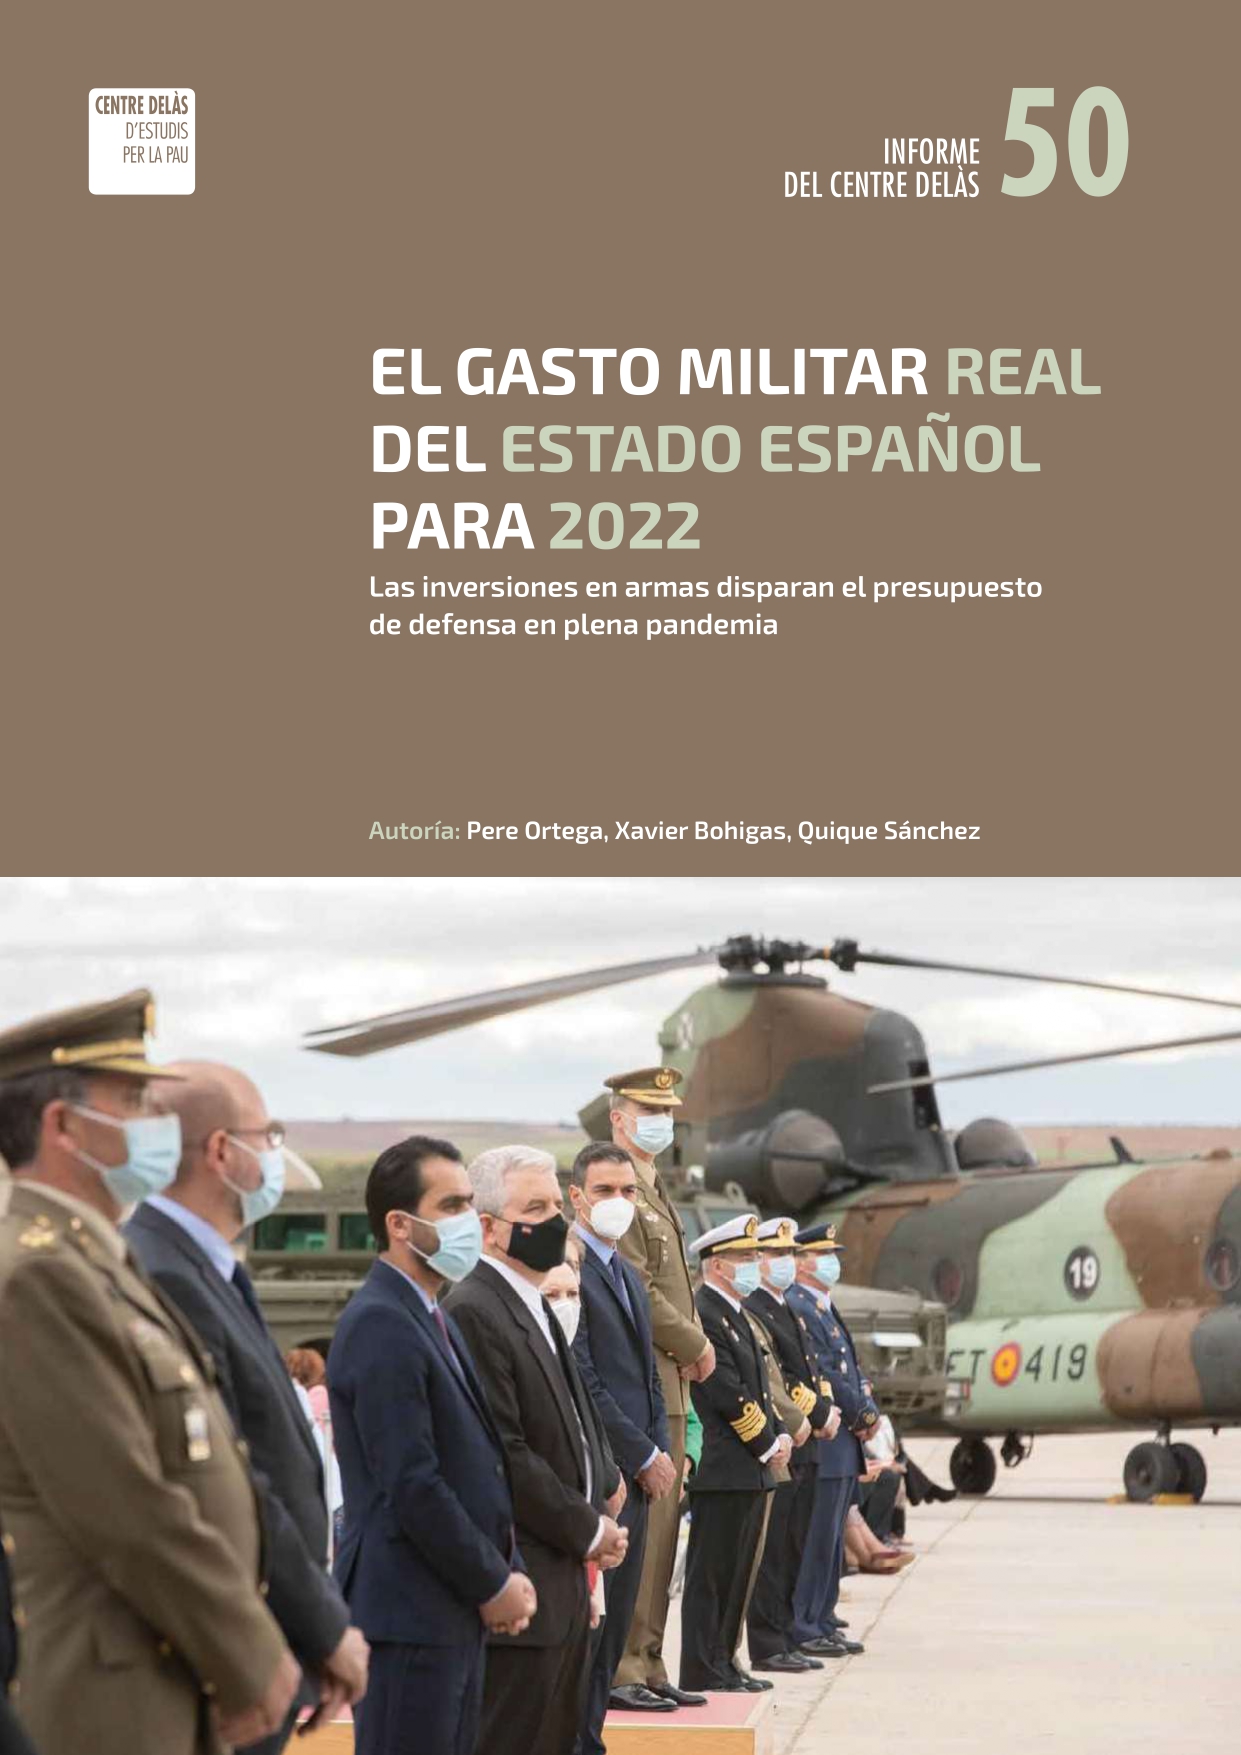 Informe 50: “El gasto militar real del Estado español para 2022. Las inversiones en armas disparan el presupuesto en defensa en plena pandemia”